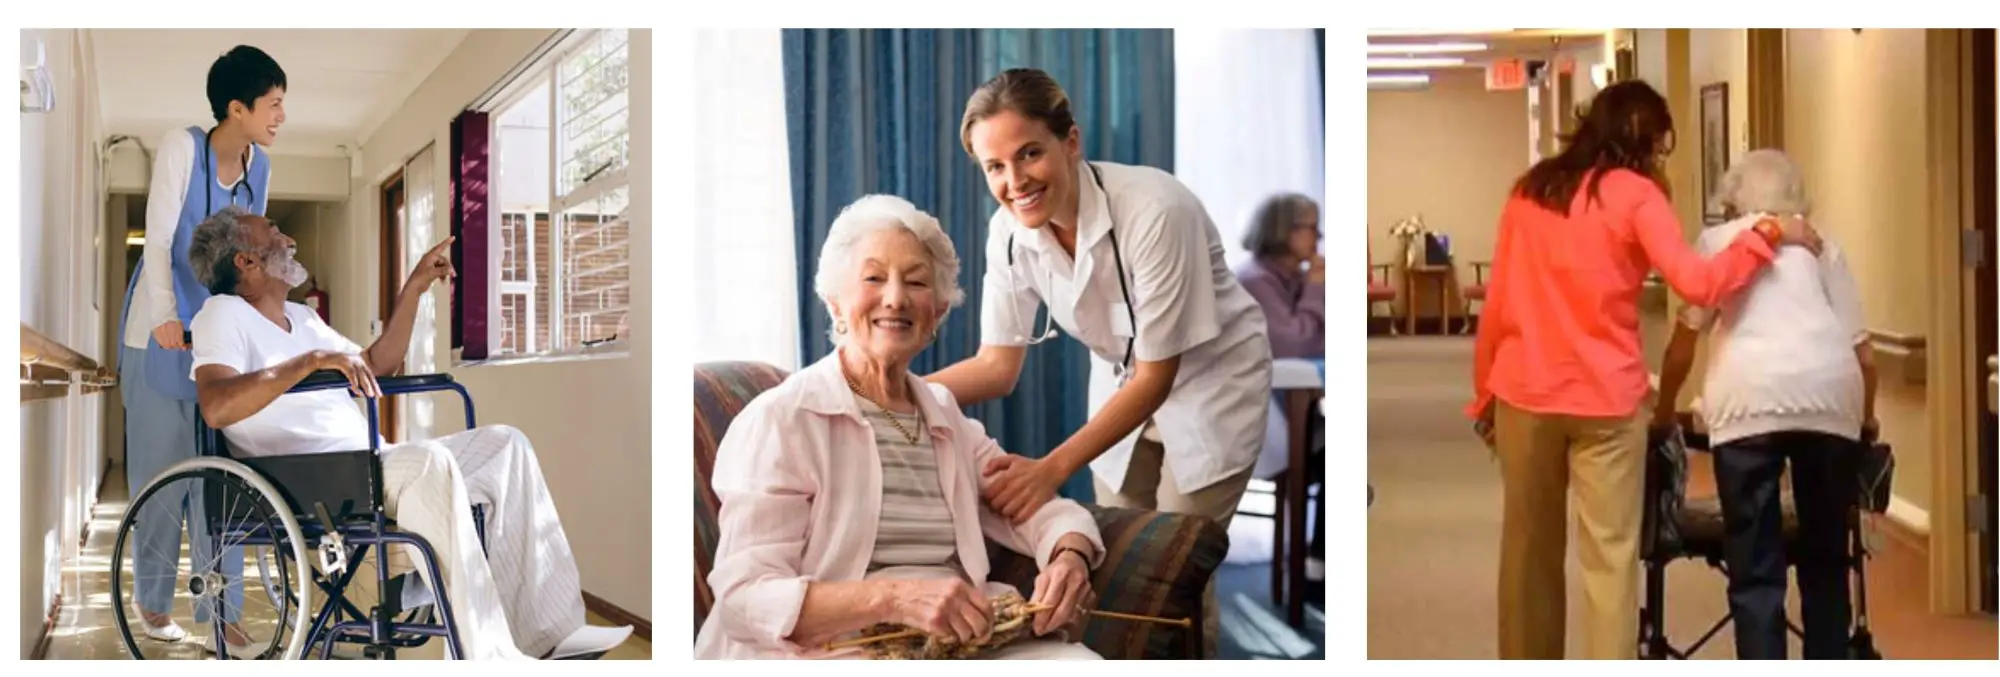 nursing home info